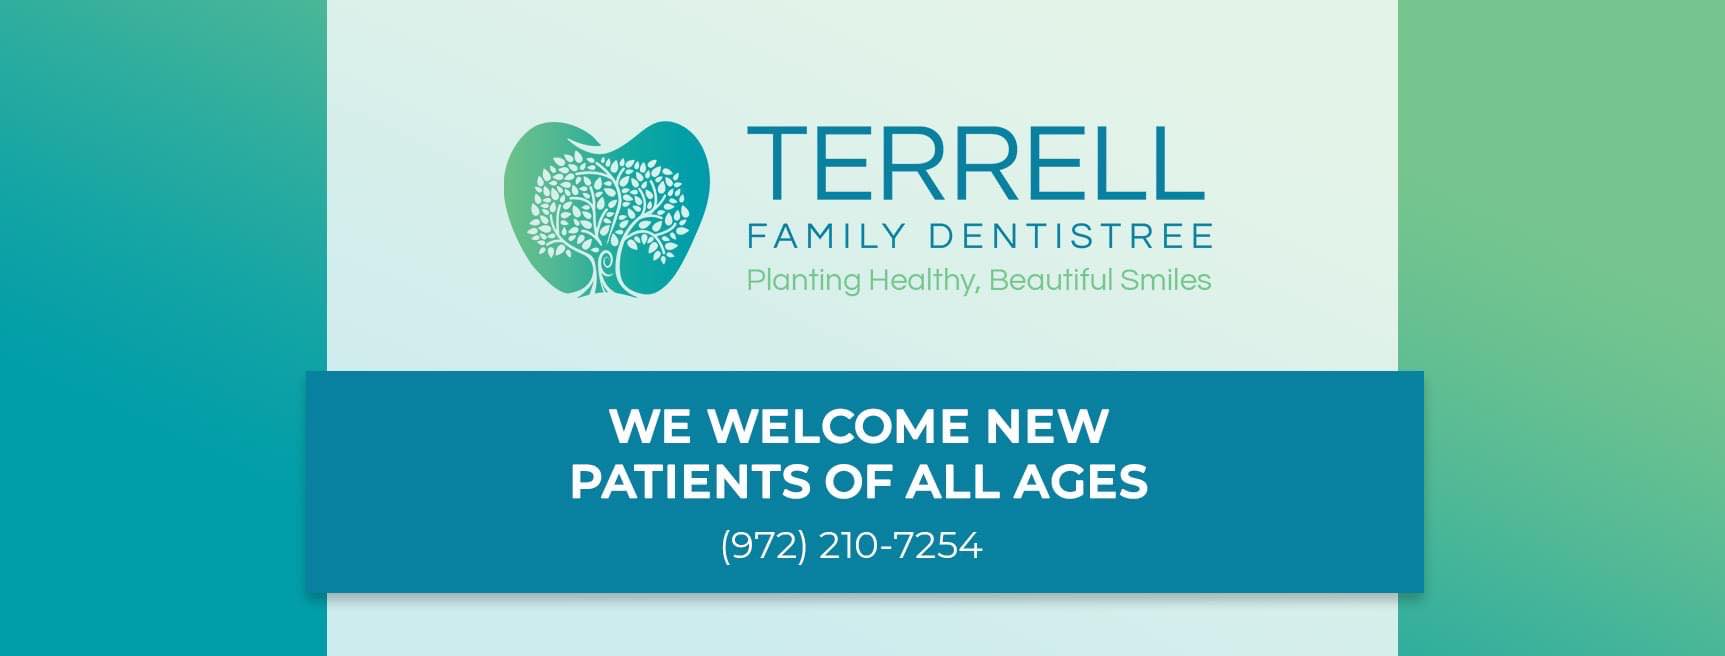 Terrell Family Dentistree